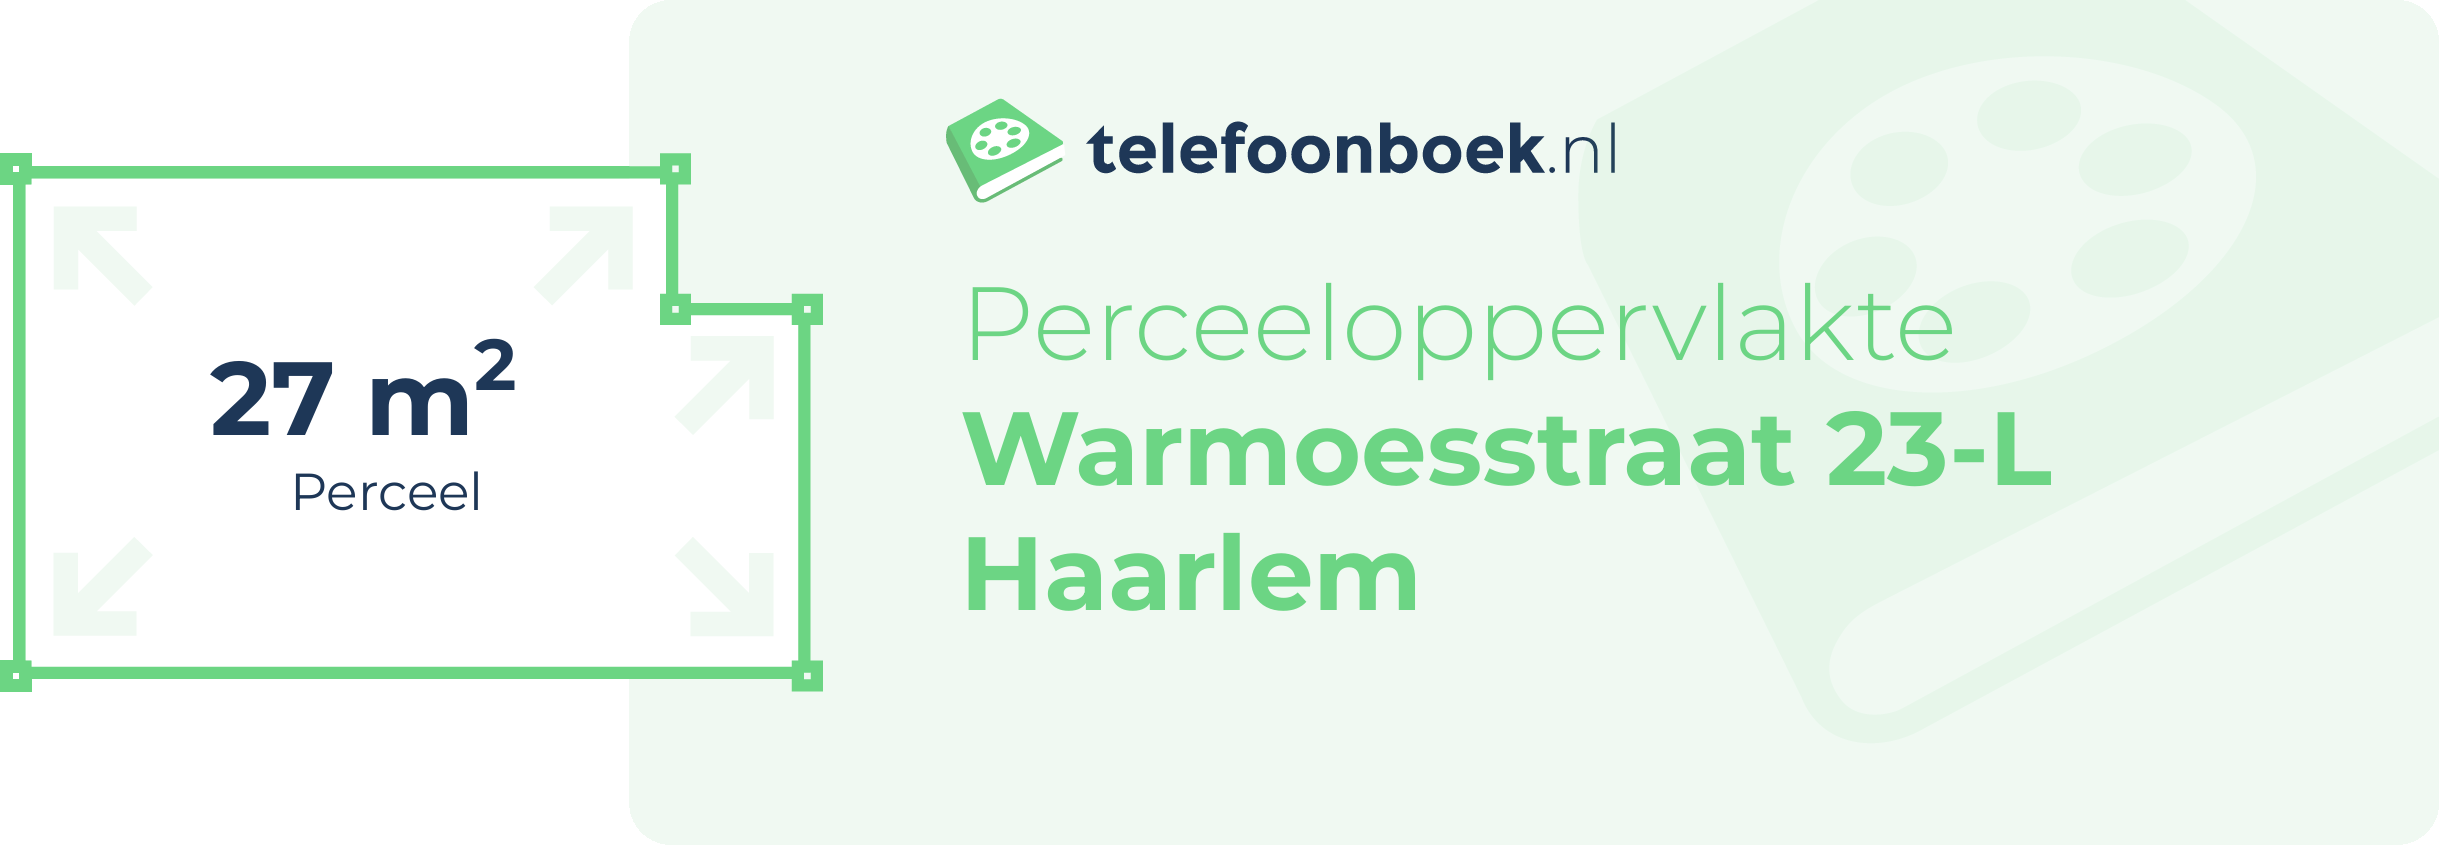 Perceeloppervlakte Warmoesstraat 23-L Haarlem